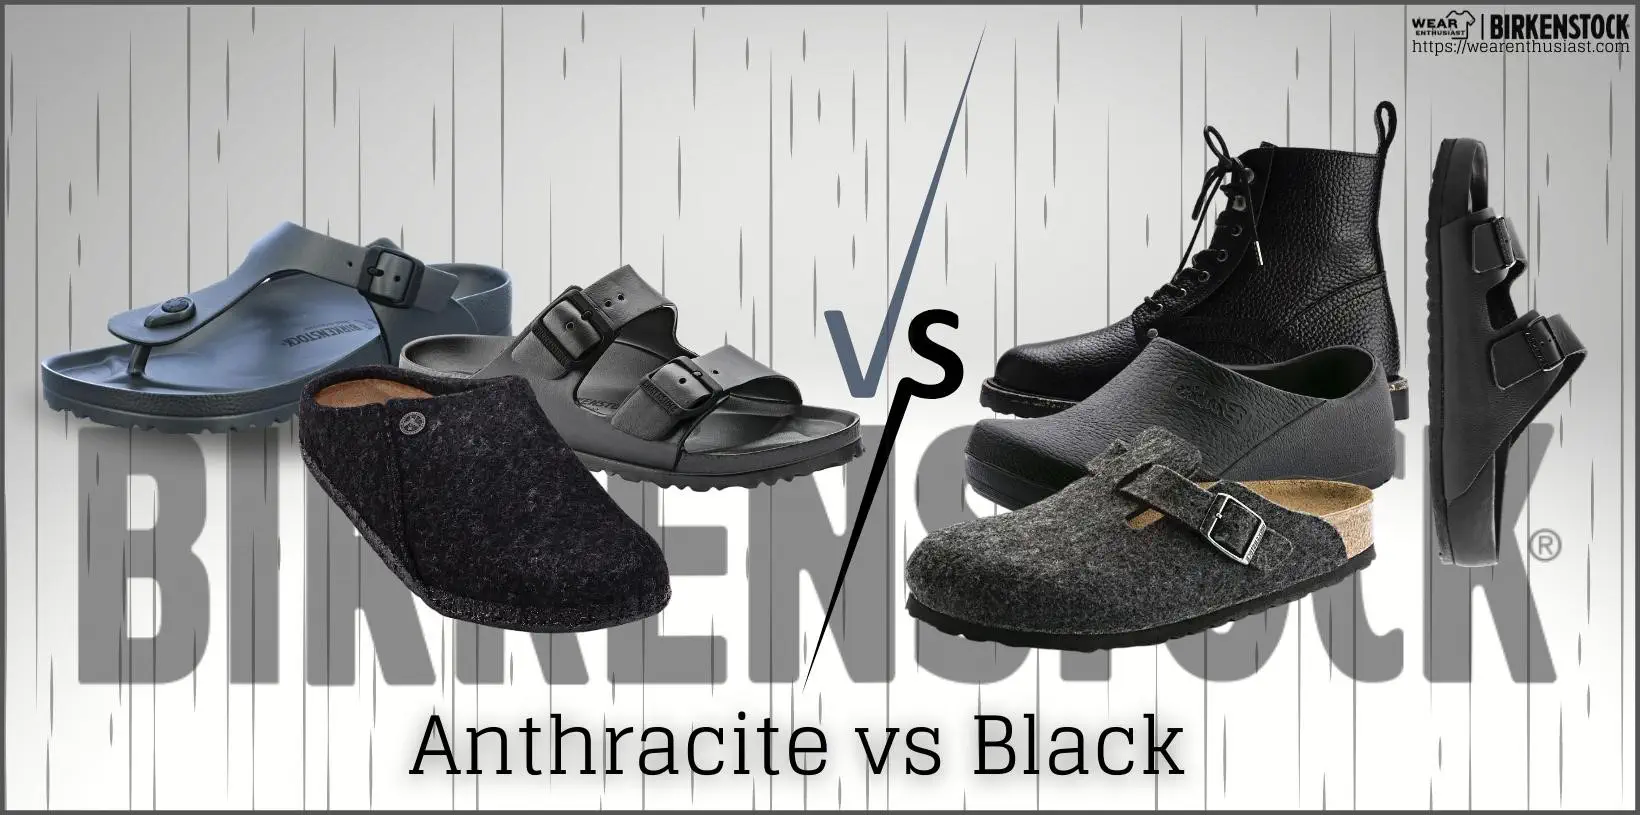 Birkenstock Anthracite vs Black